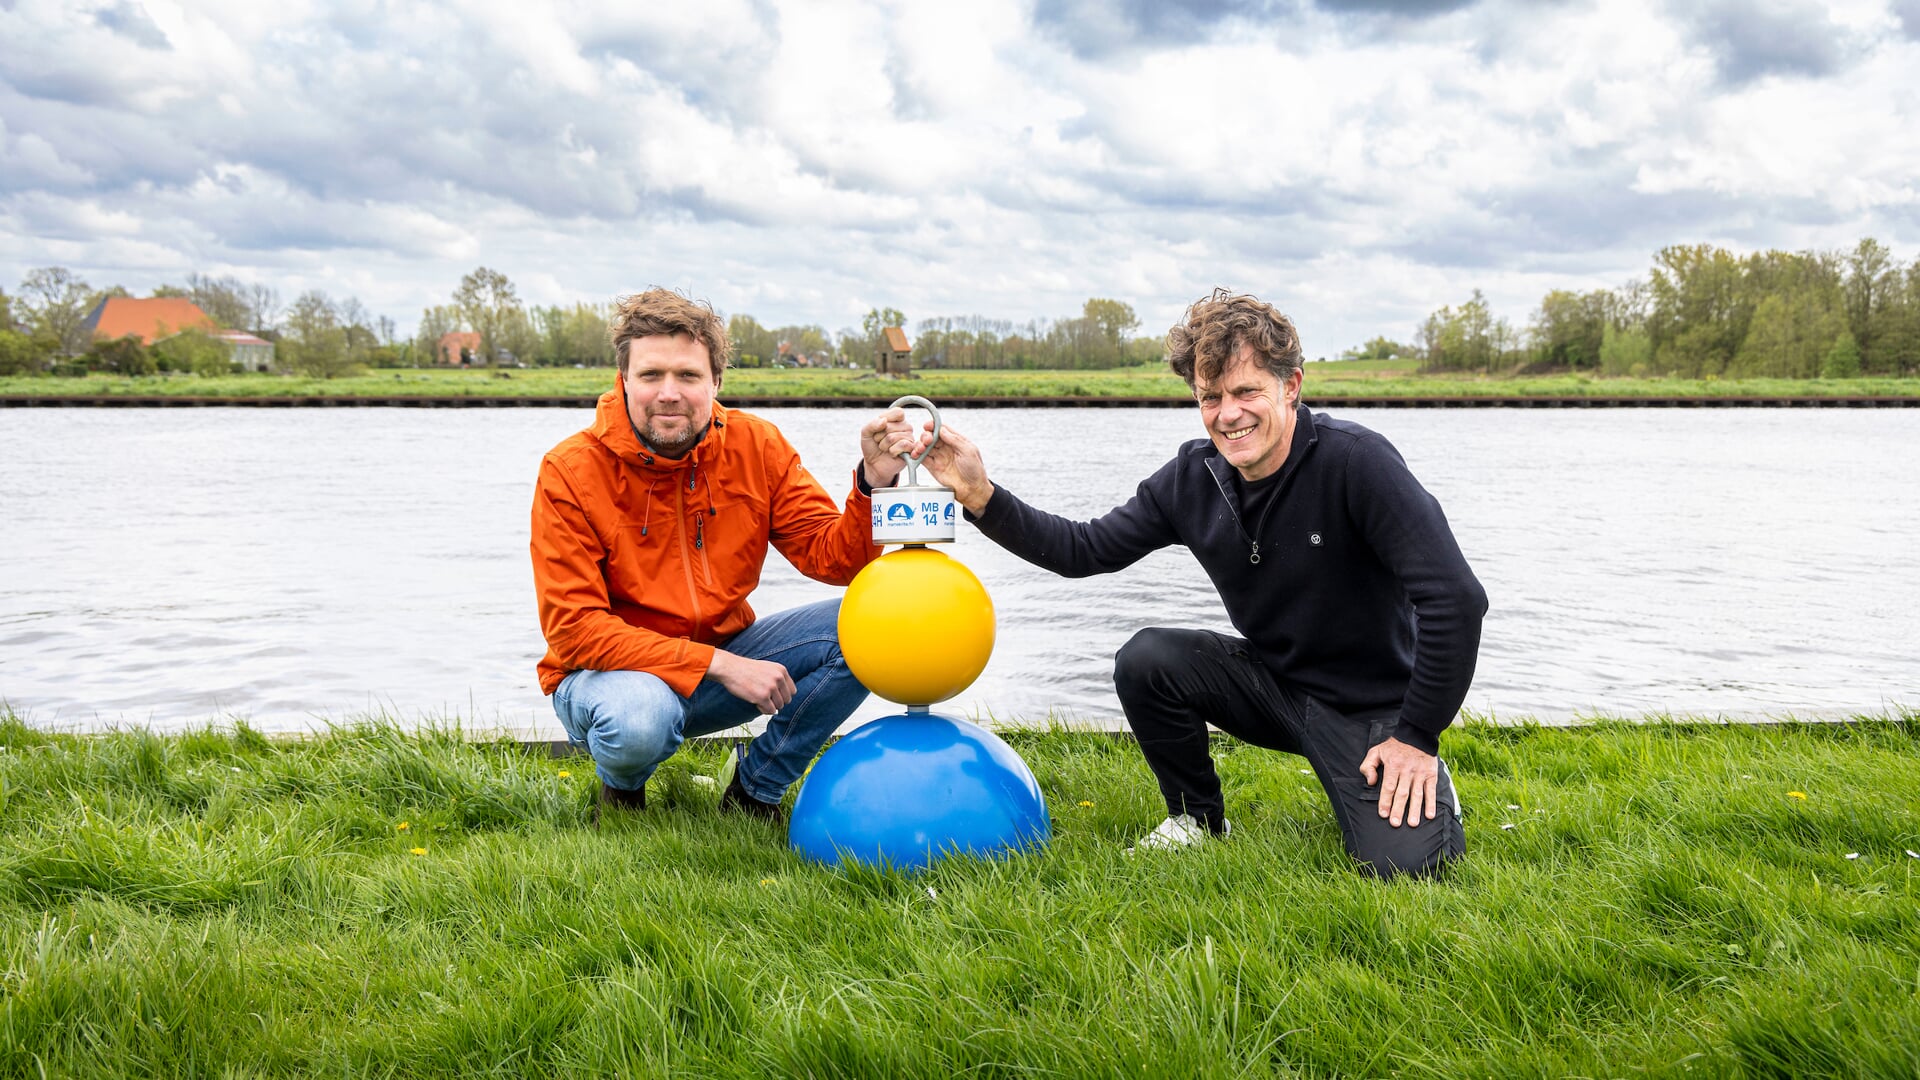 MarBoei Poëzieroute: Lourens Touwen, directeur van Recreatieschap Marrekrite (rechts) en Floriaan Zwart, directeur VVV Waterland van Friesland